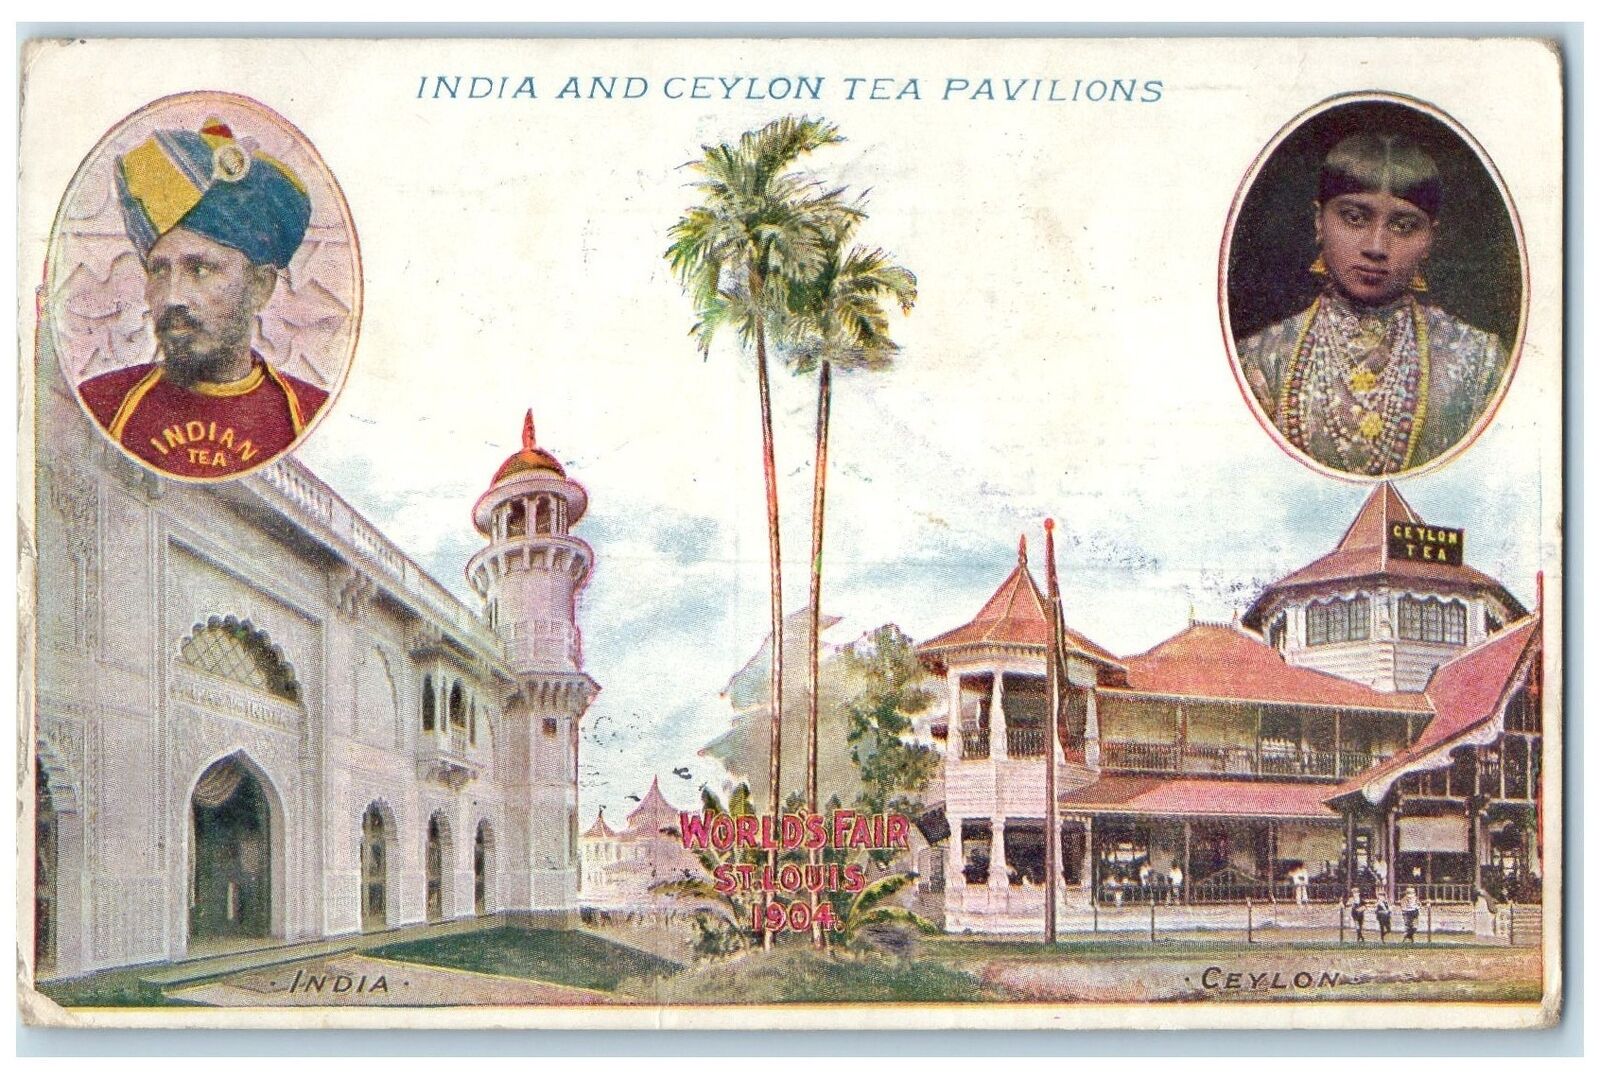 1905 Indian & Ceylon Tea Pavilion World Fair Scene Chicago Illinois IL Postcard